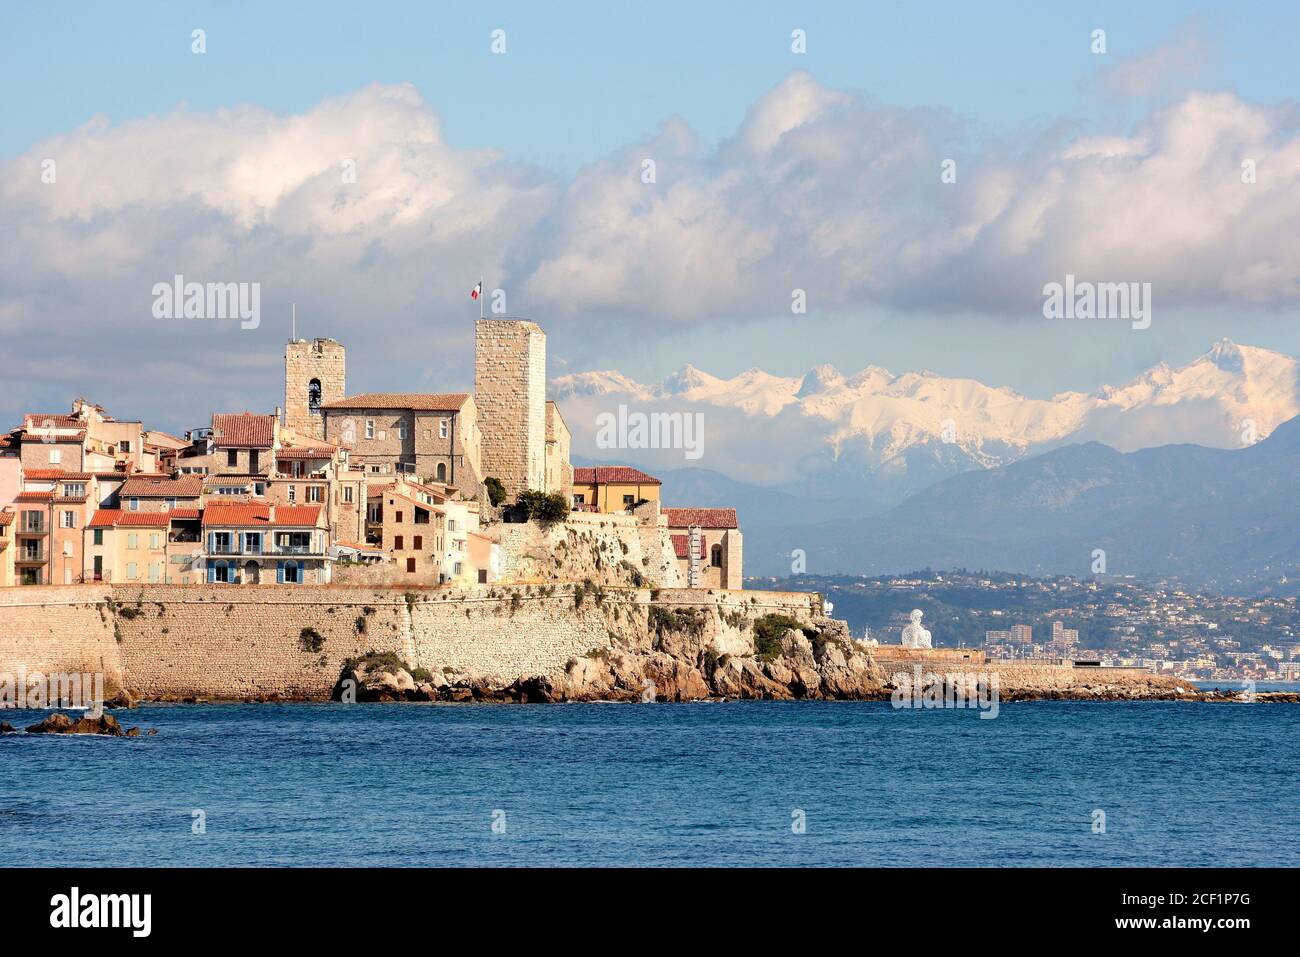 Francia, costa azzurra, Antibes, il centro storico con i bastioni, il castello Grimaldi, la cattedrale, il massiccio nevoso del Mercantour e il mediterraneo Foto Stock